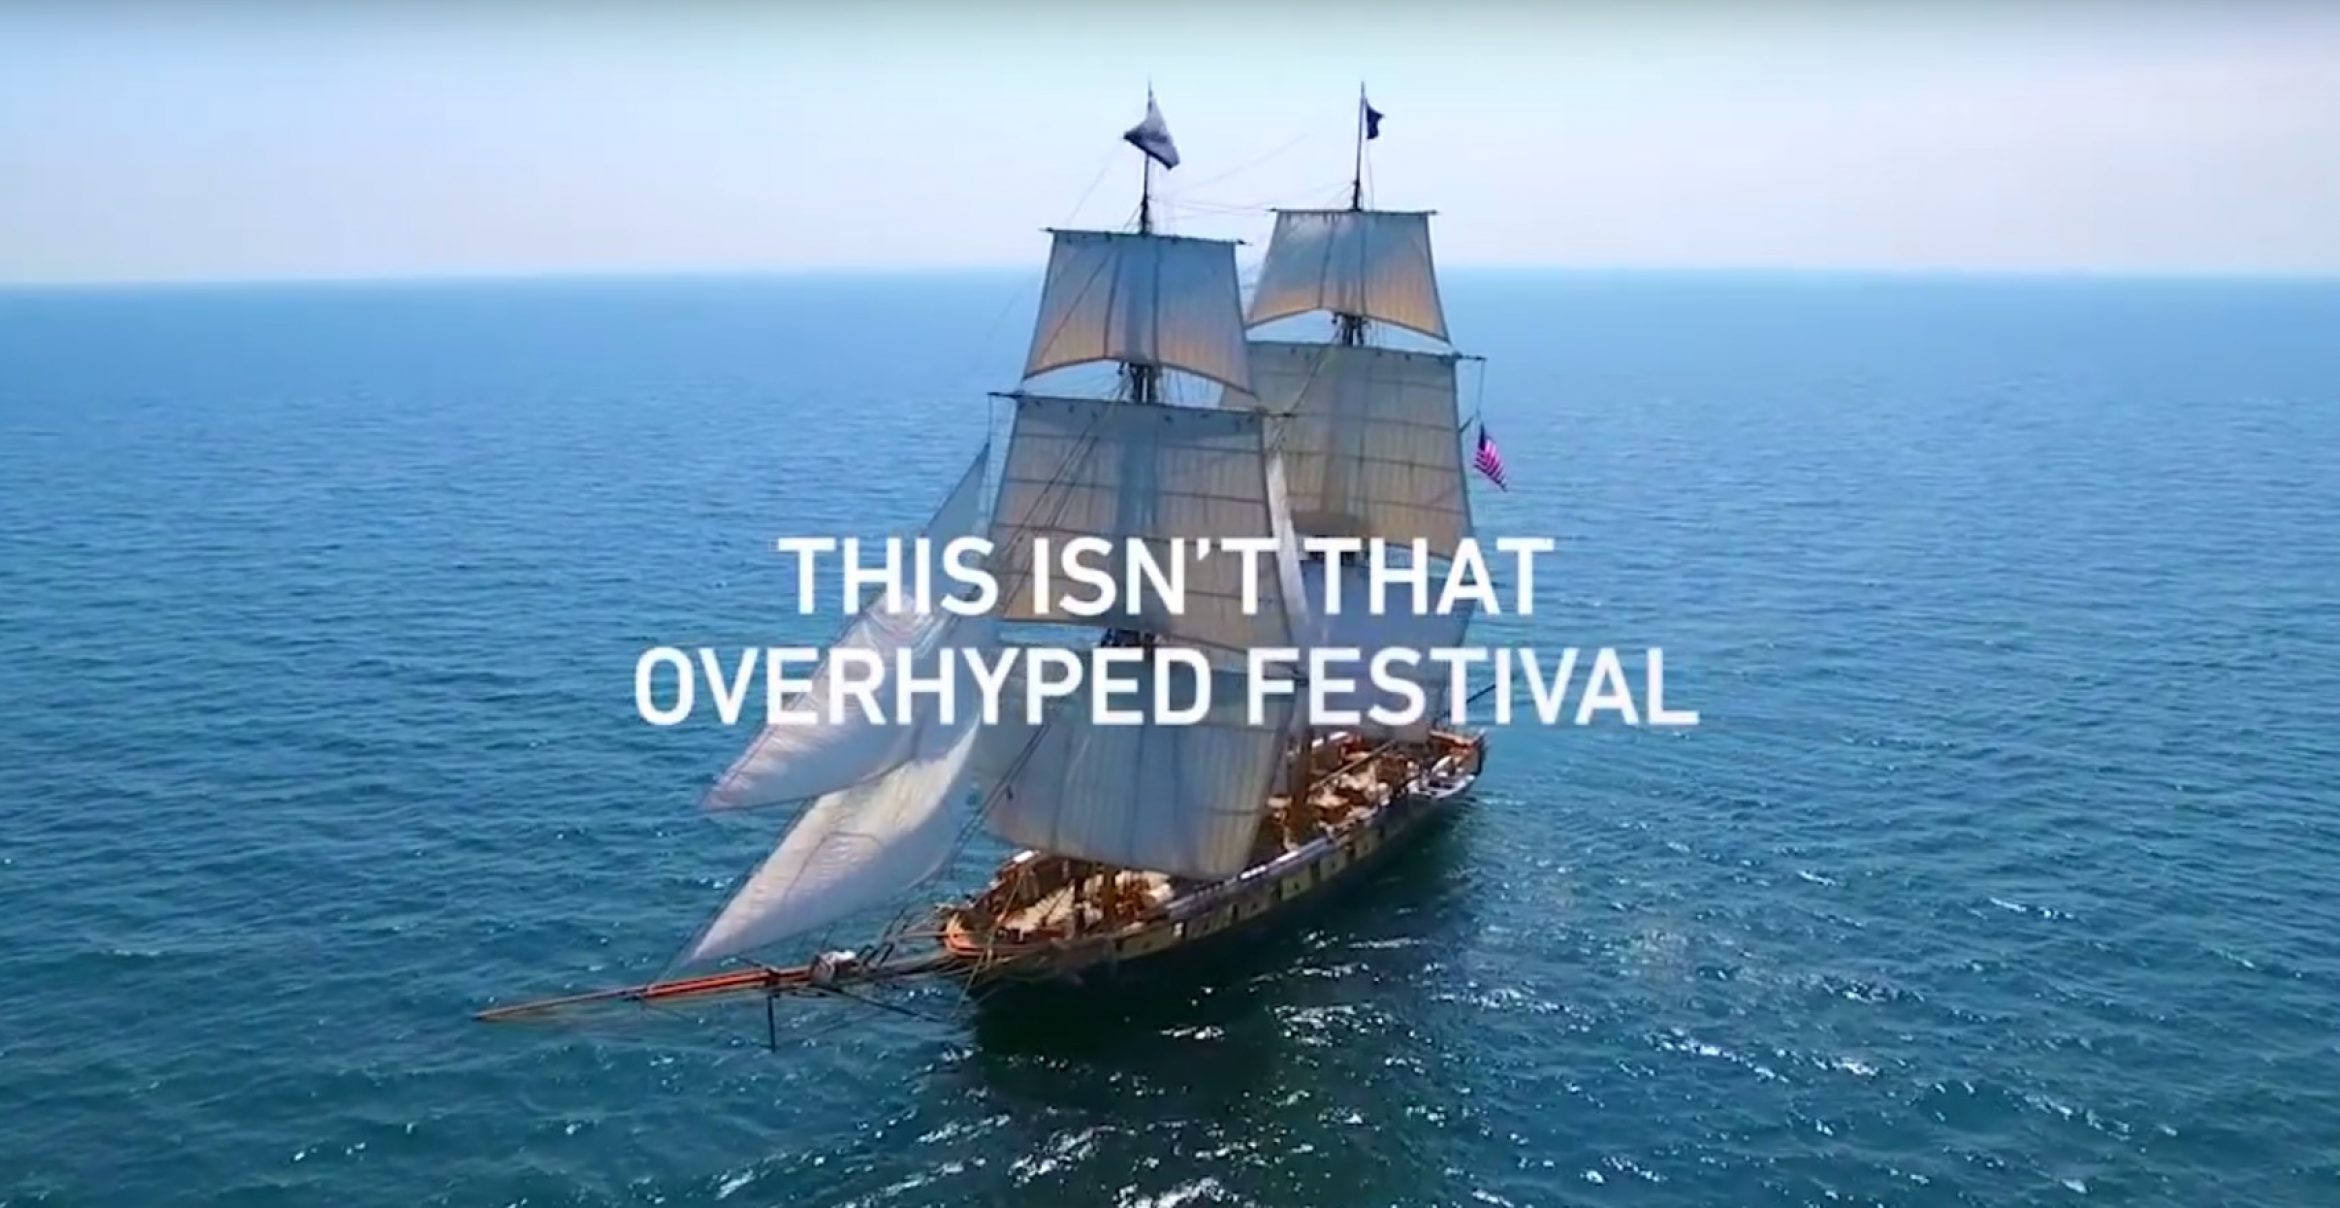 Shutterstock nimmt im neuen Werbe-Spot das Fyre-Festival aufs Korn